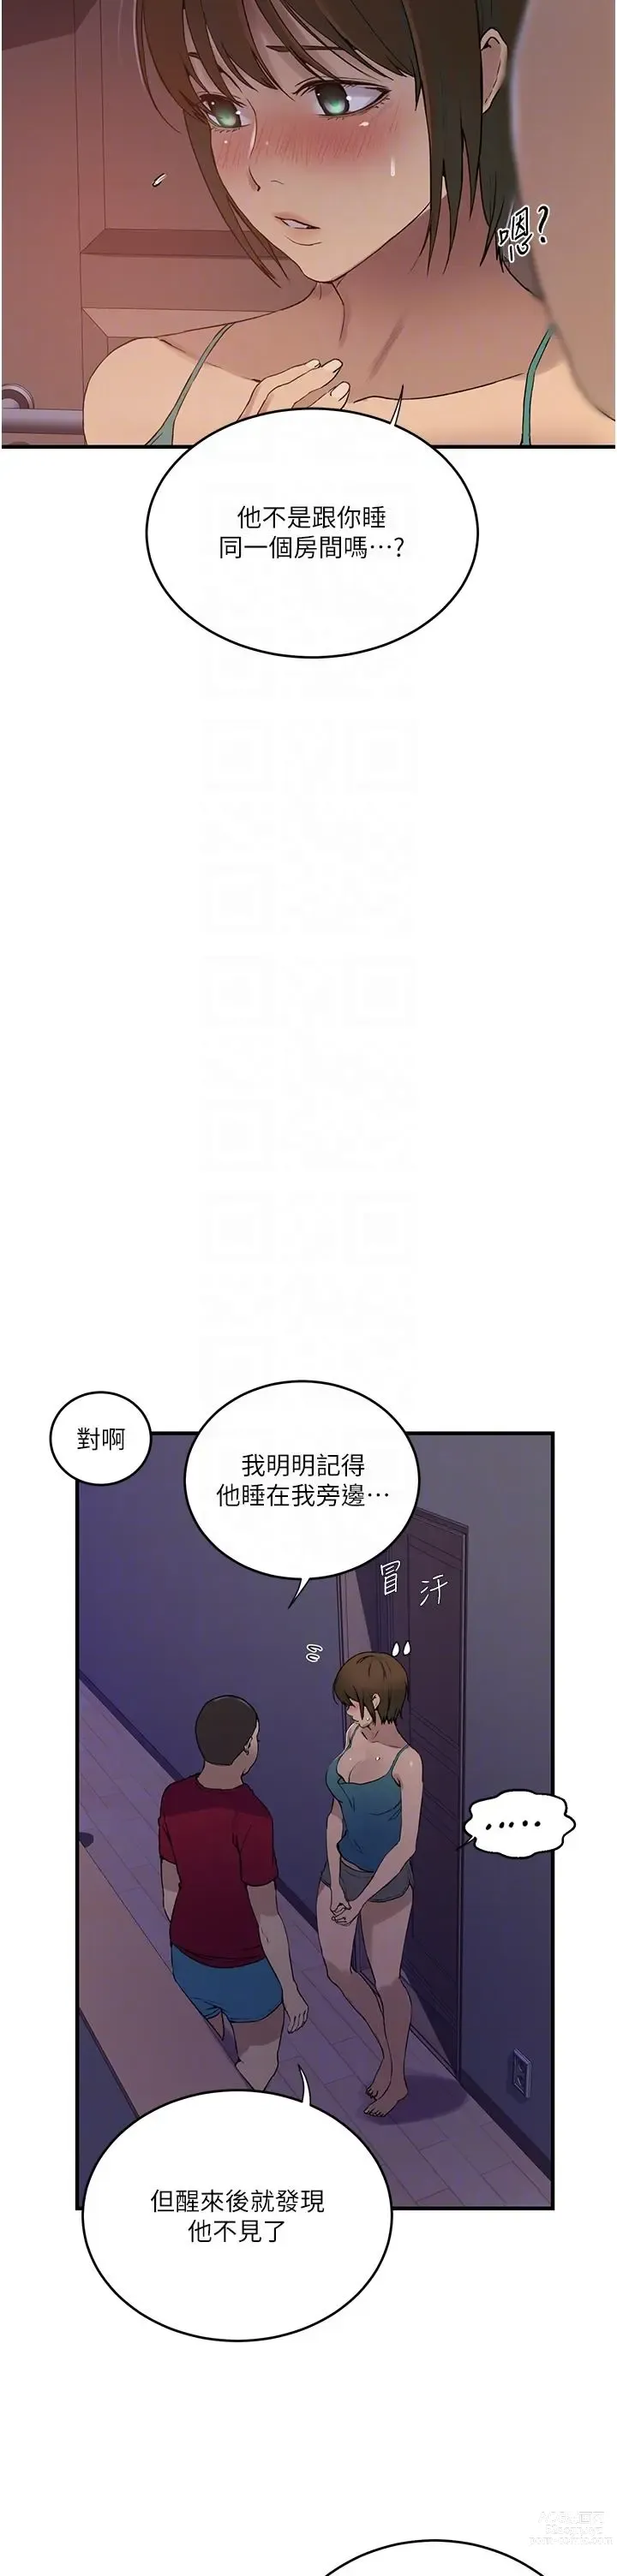 Page 7 of manga 秘密教学/The Class Of The Secret 181-208